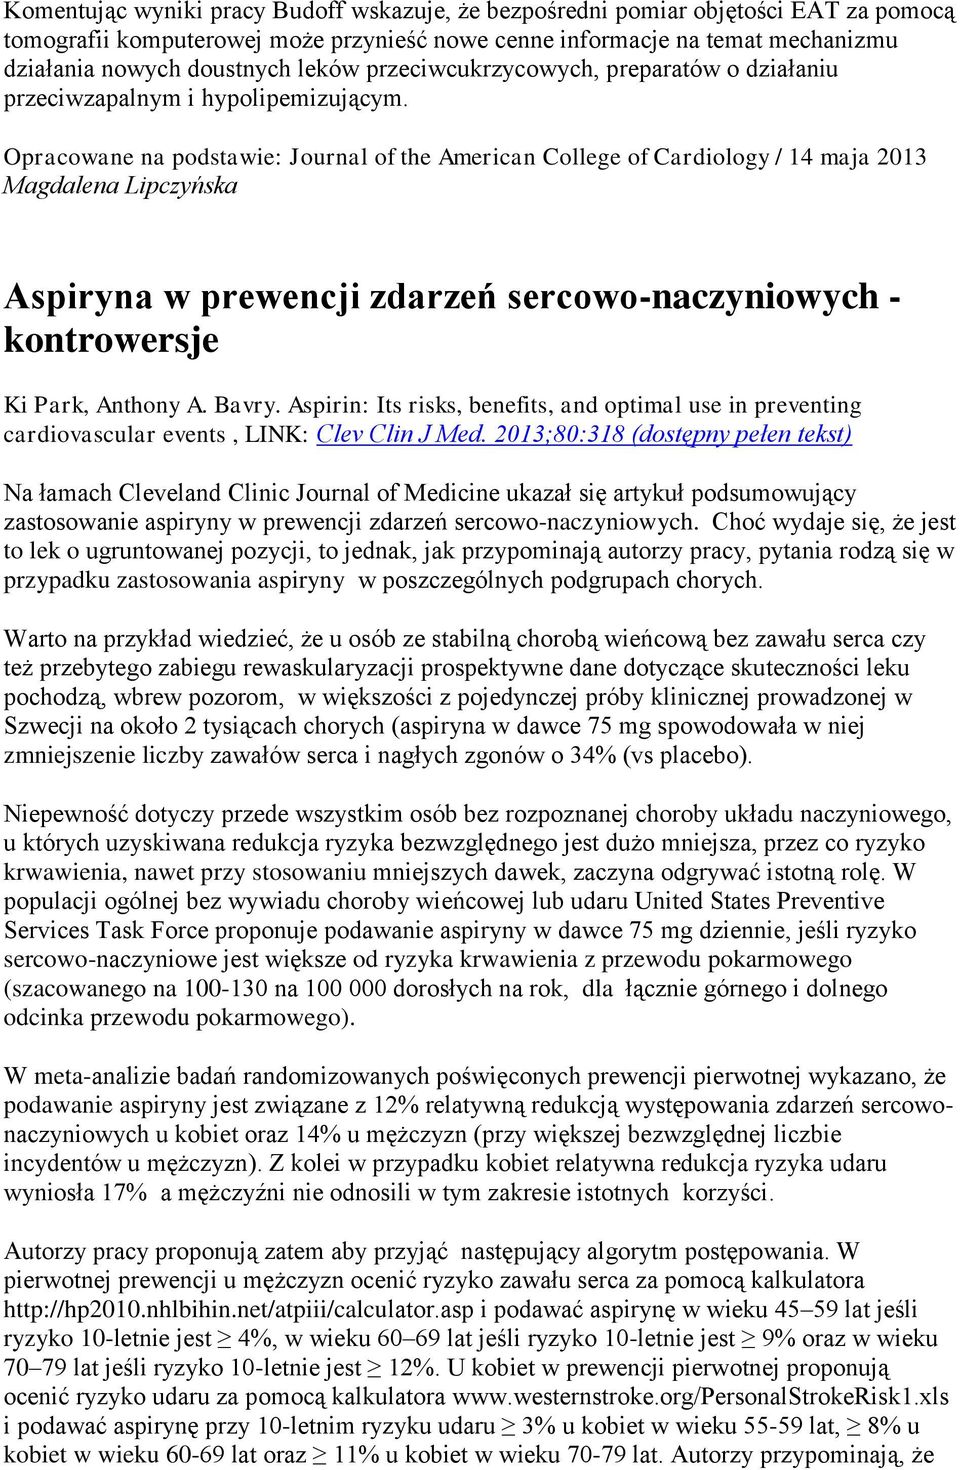 Opracowane na podstawie: Journal of the American College of Cardiology / 14 maja 2013 Magdalena Lipczyńska Aspiryna w prewencji zdarzeń sercowo-naczyniowych - kontrowersje Ki Park, Anthony A. Bavry.